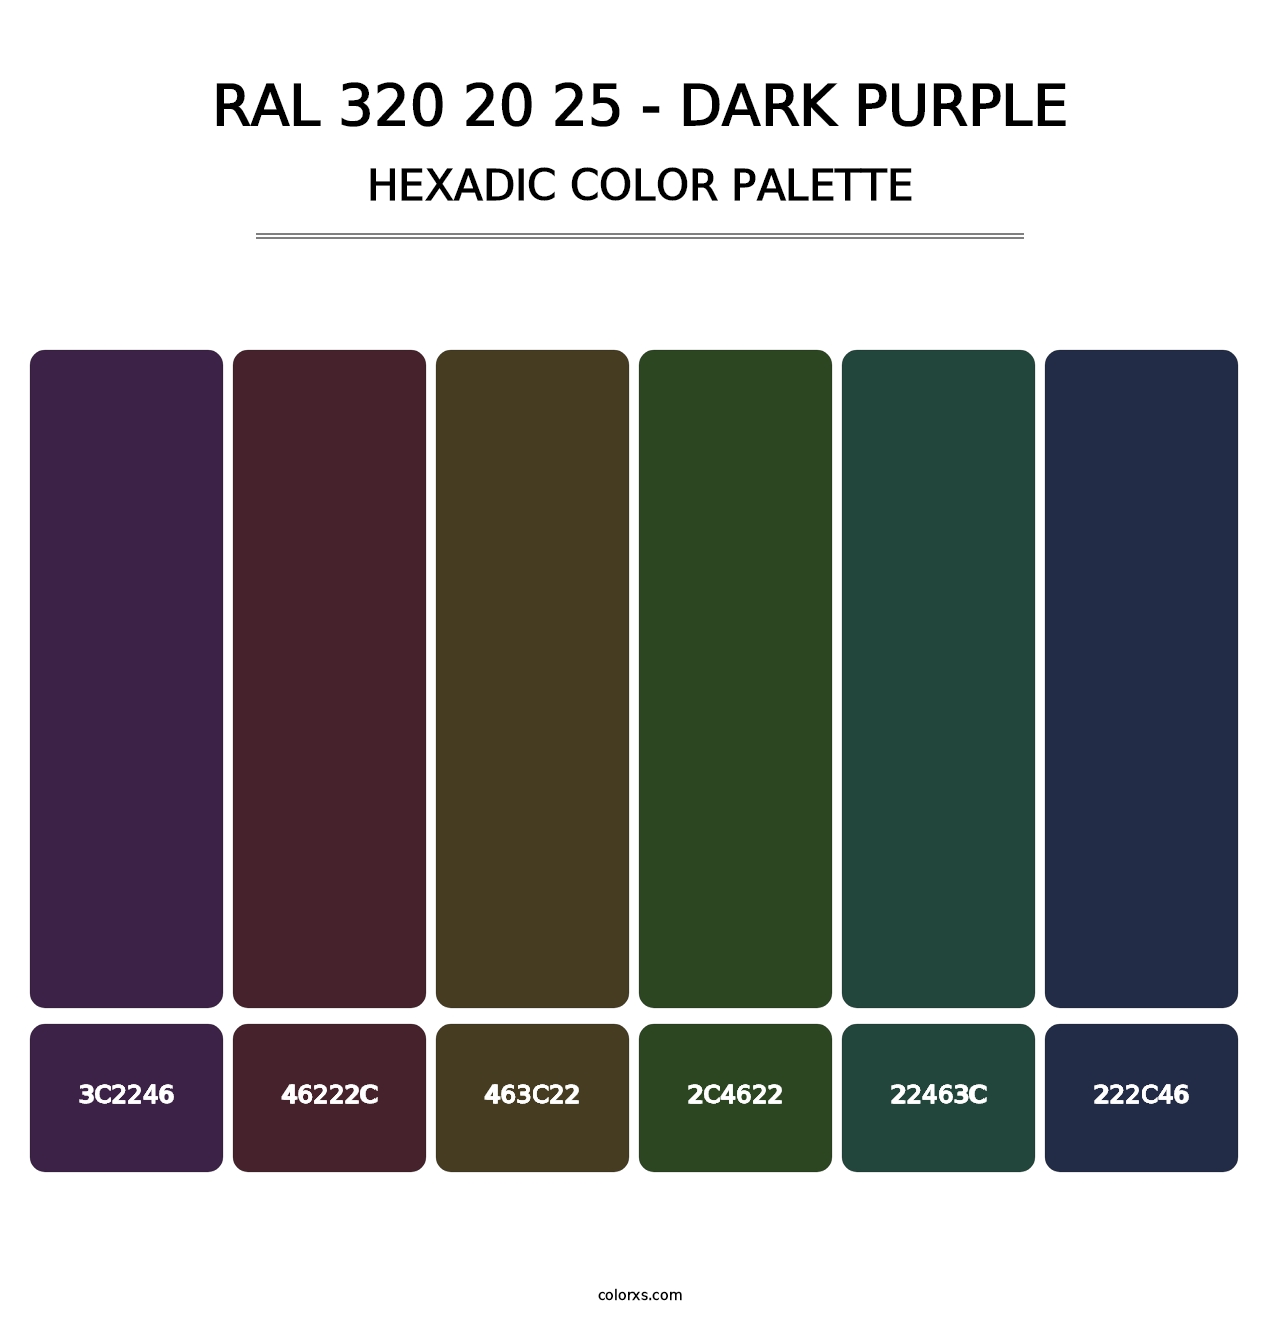 RAL 320 20 25 - Dark Purple - Hexadic Color Palette